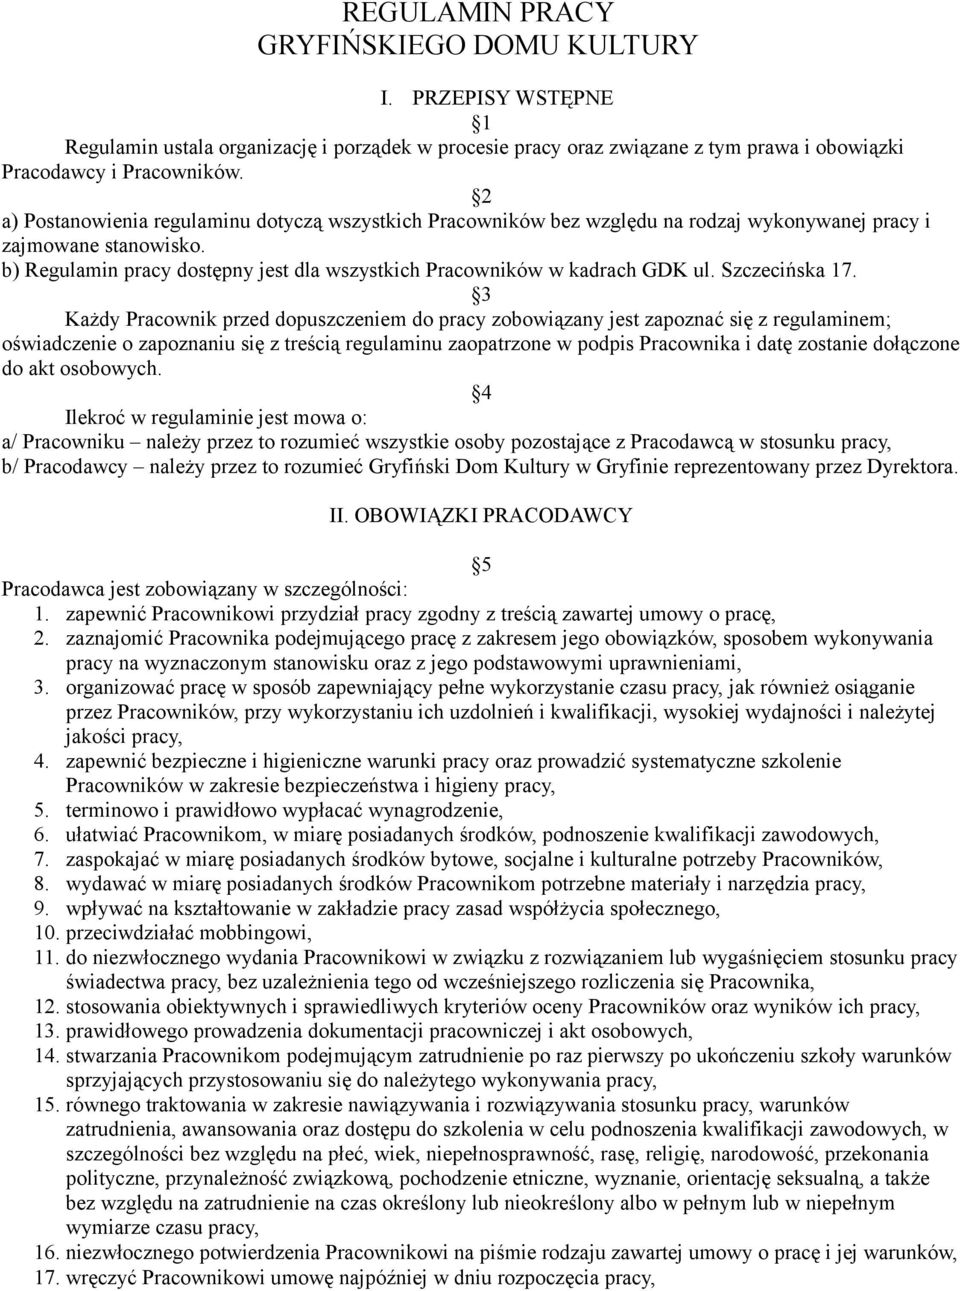 b) Regulamin pracy dostępny jest dla wszystkich Pracowników w kadrach GDK ul. Szczecińska 17.